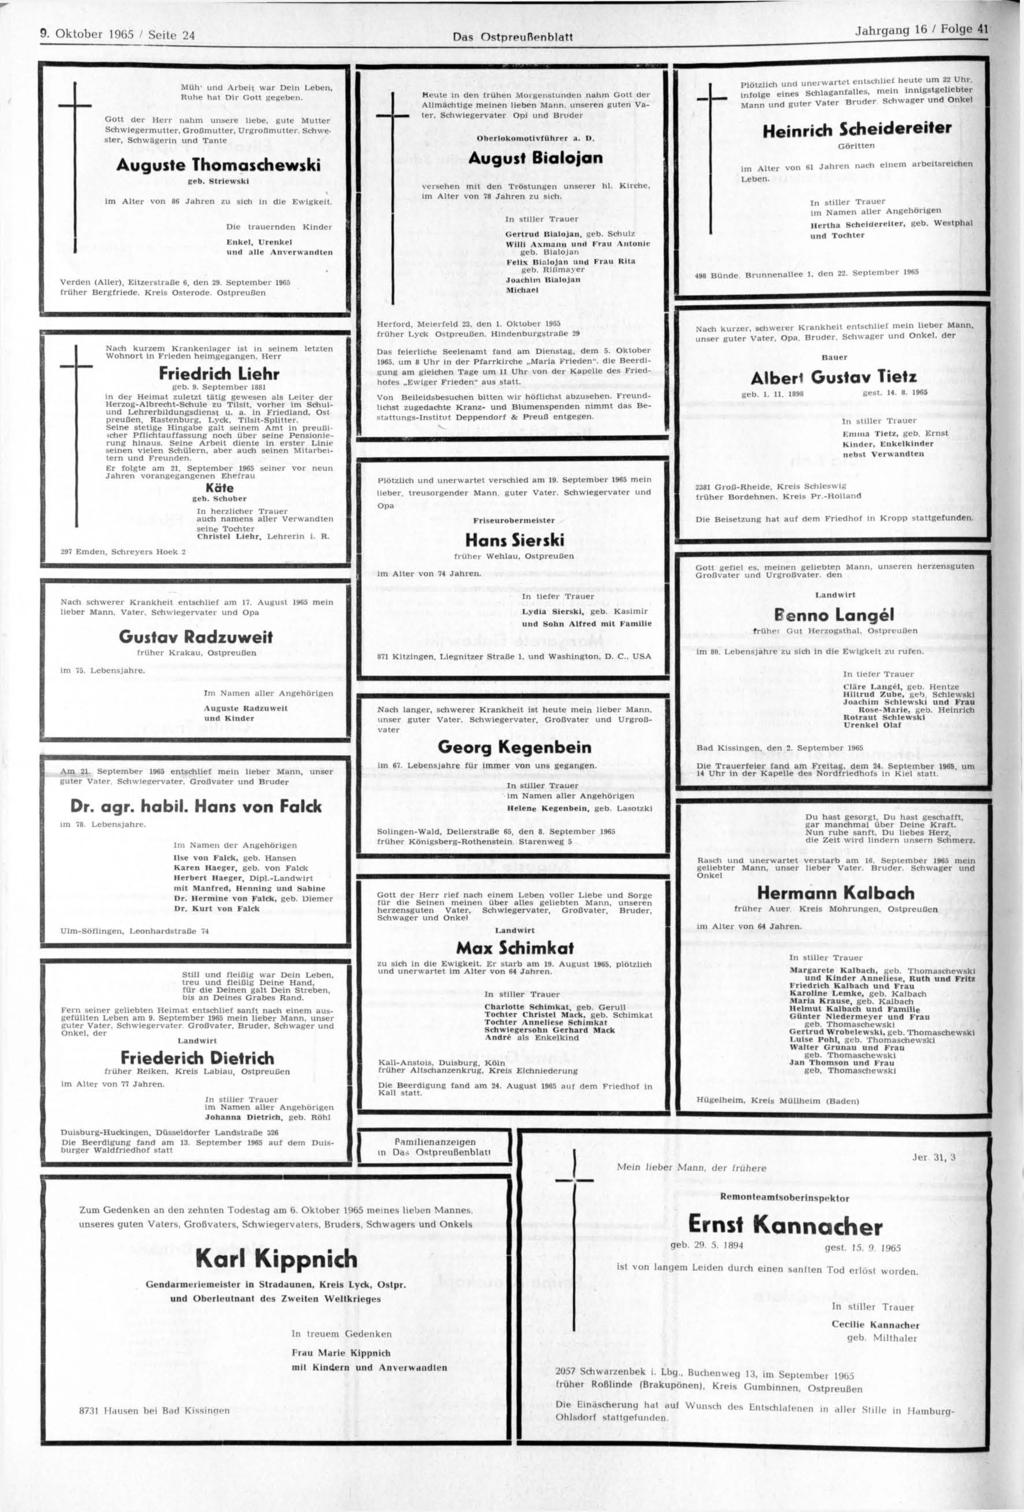 9. Oktober 1965 / Seite 24 Das Ostpreußenblatt Jahrgang 16 / Folge 41 Müh' und Arbeit war Dein Leben, Ruhe hat Dir Gott gegeben.